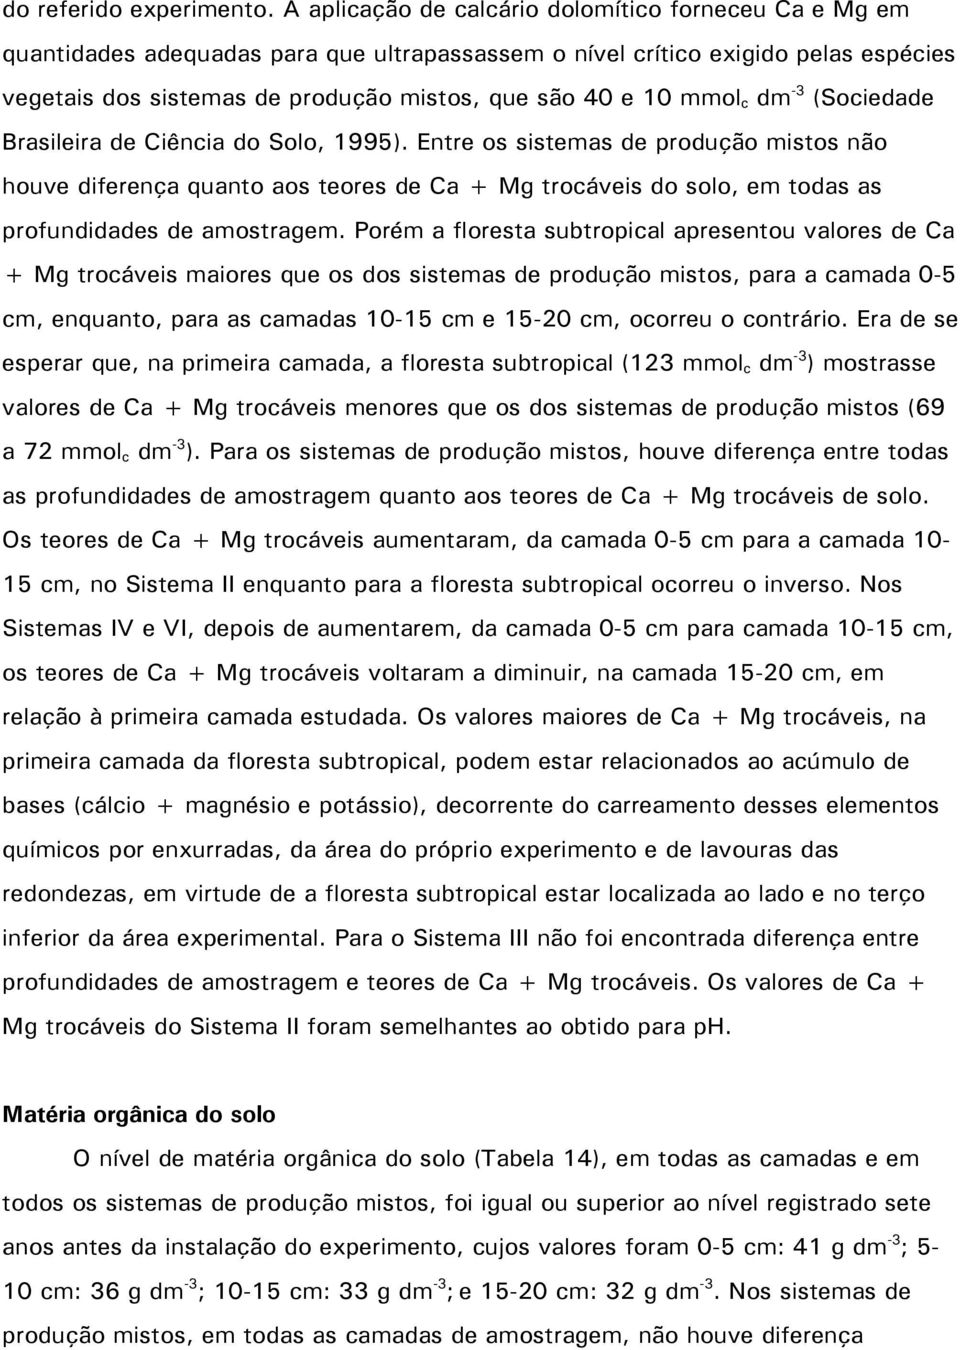 mmol c dm -3 (Sociedade Brasileira de Ciência do Solo, 1995).